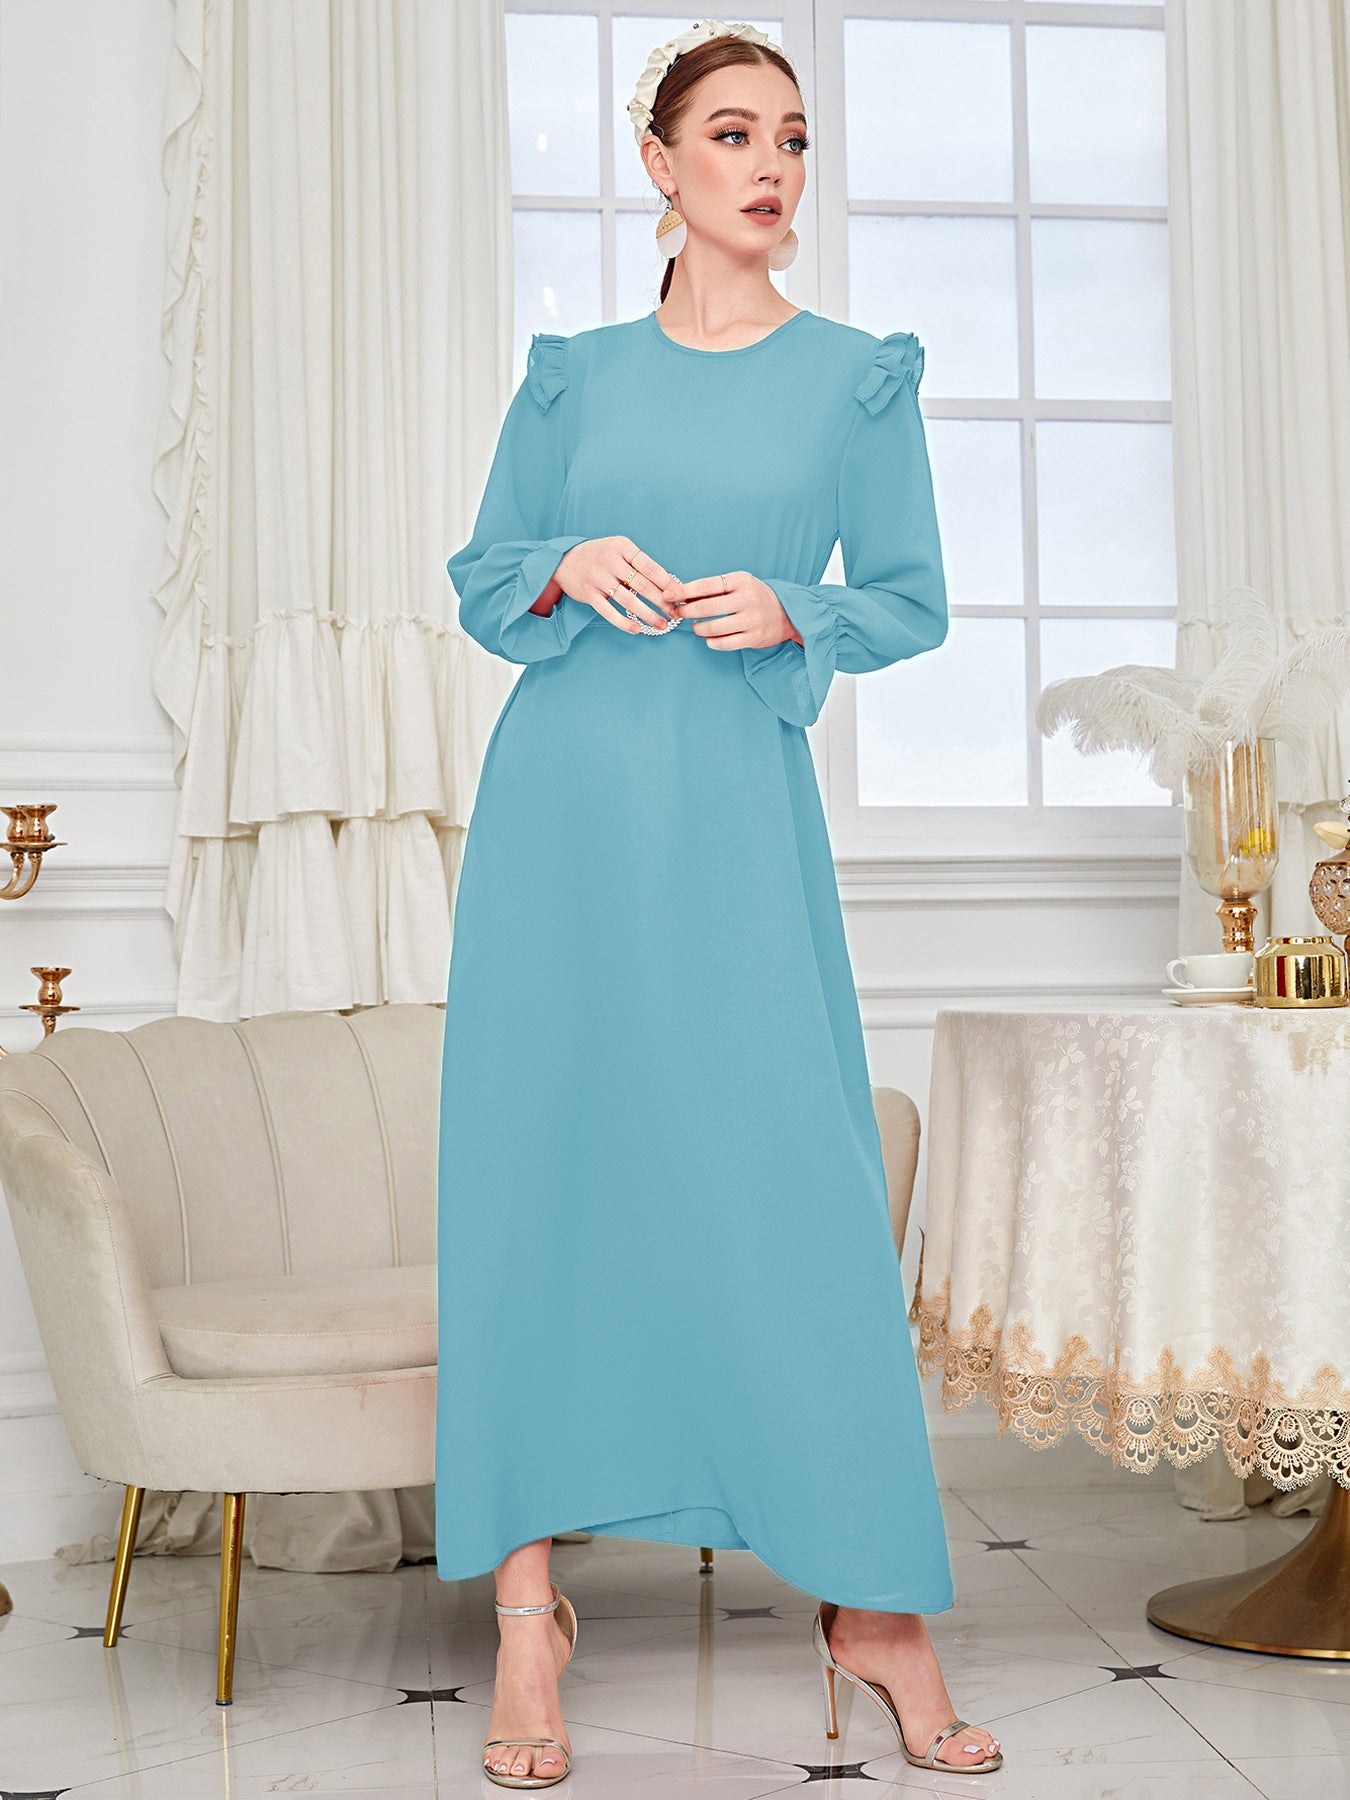 Elegant Solid Color Blue Abaya Dress